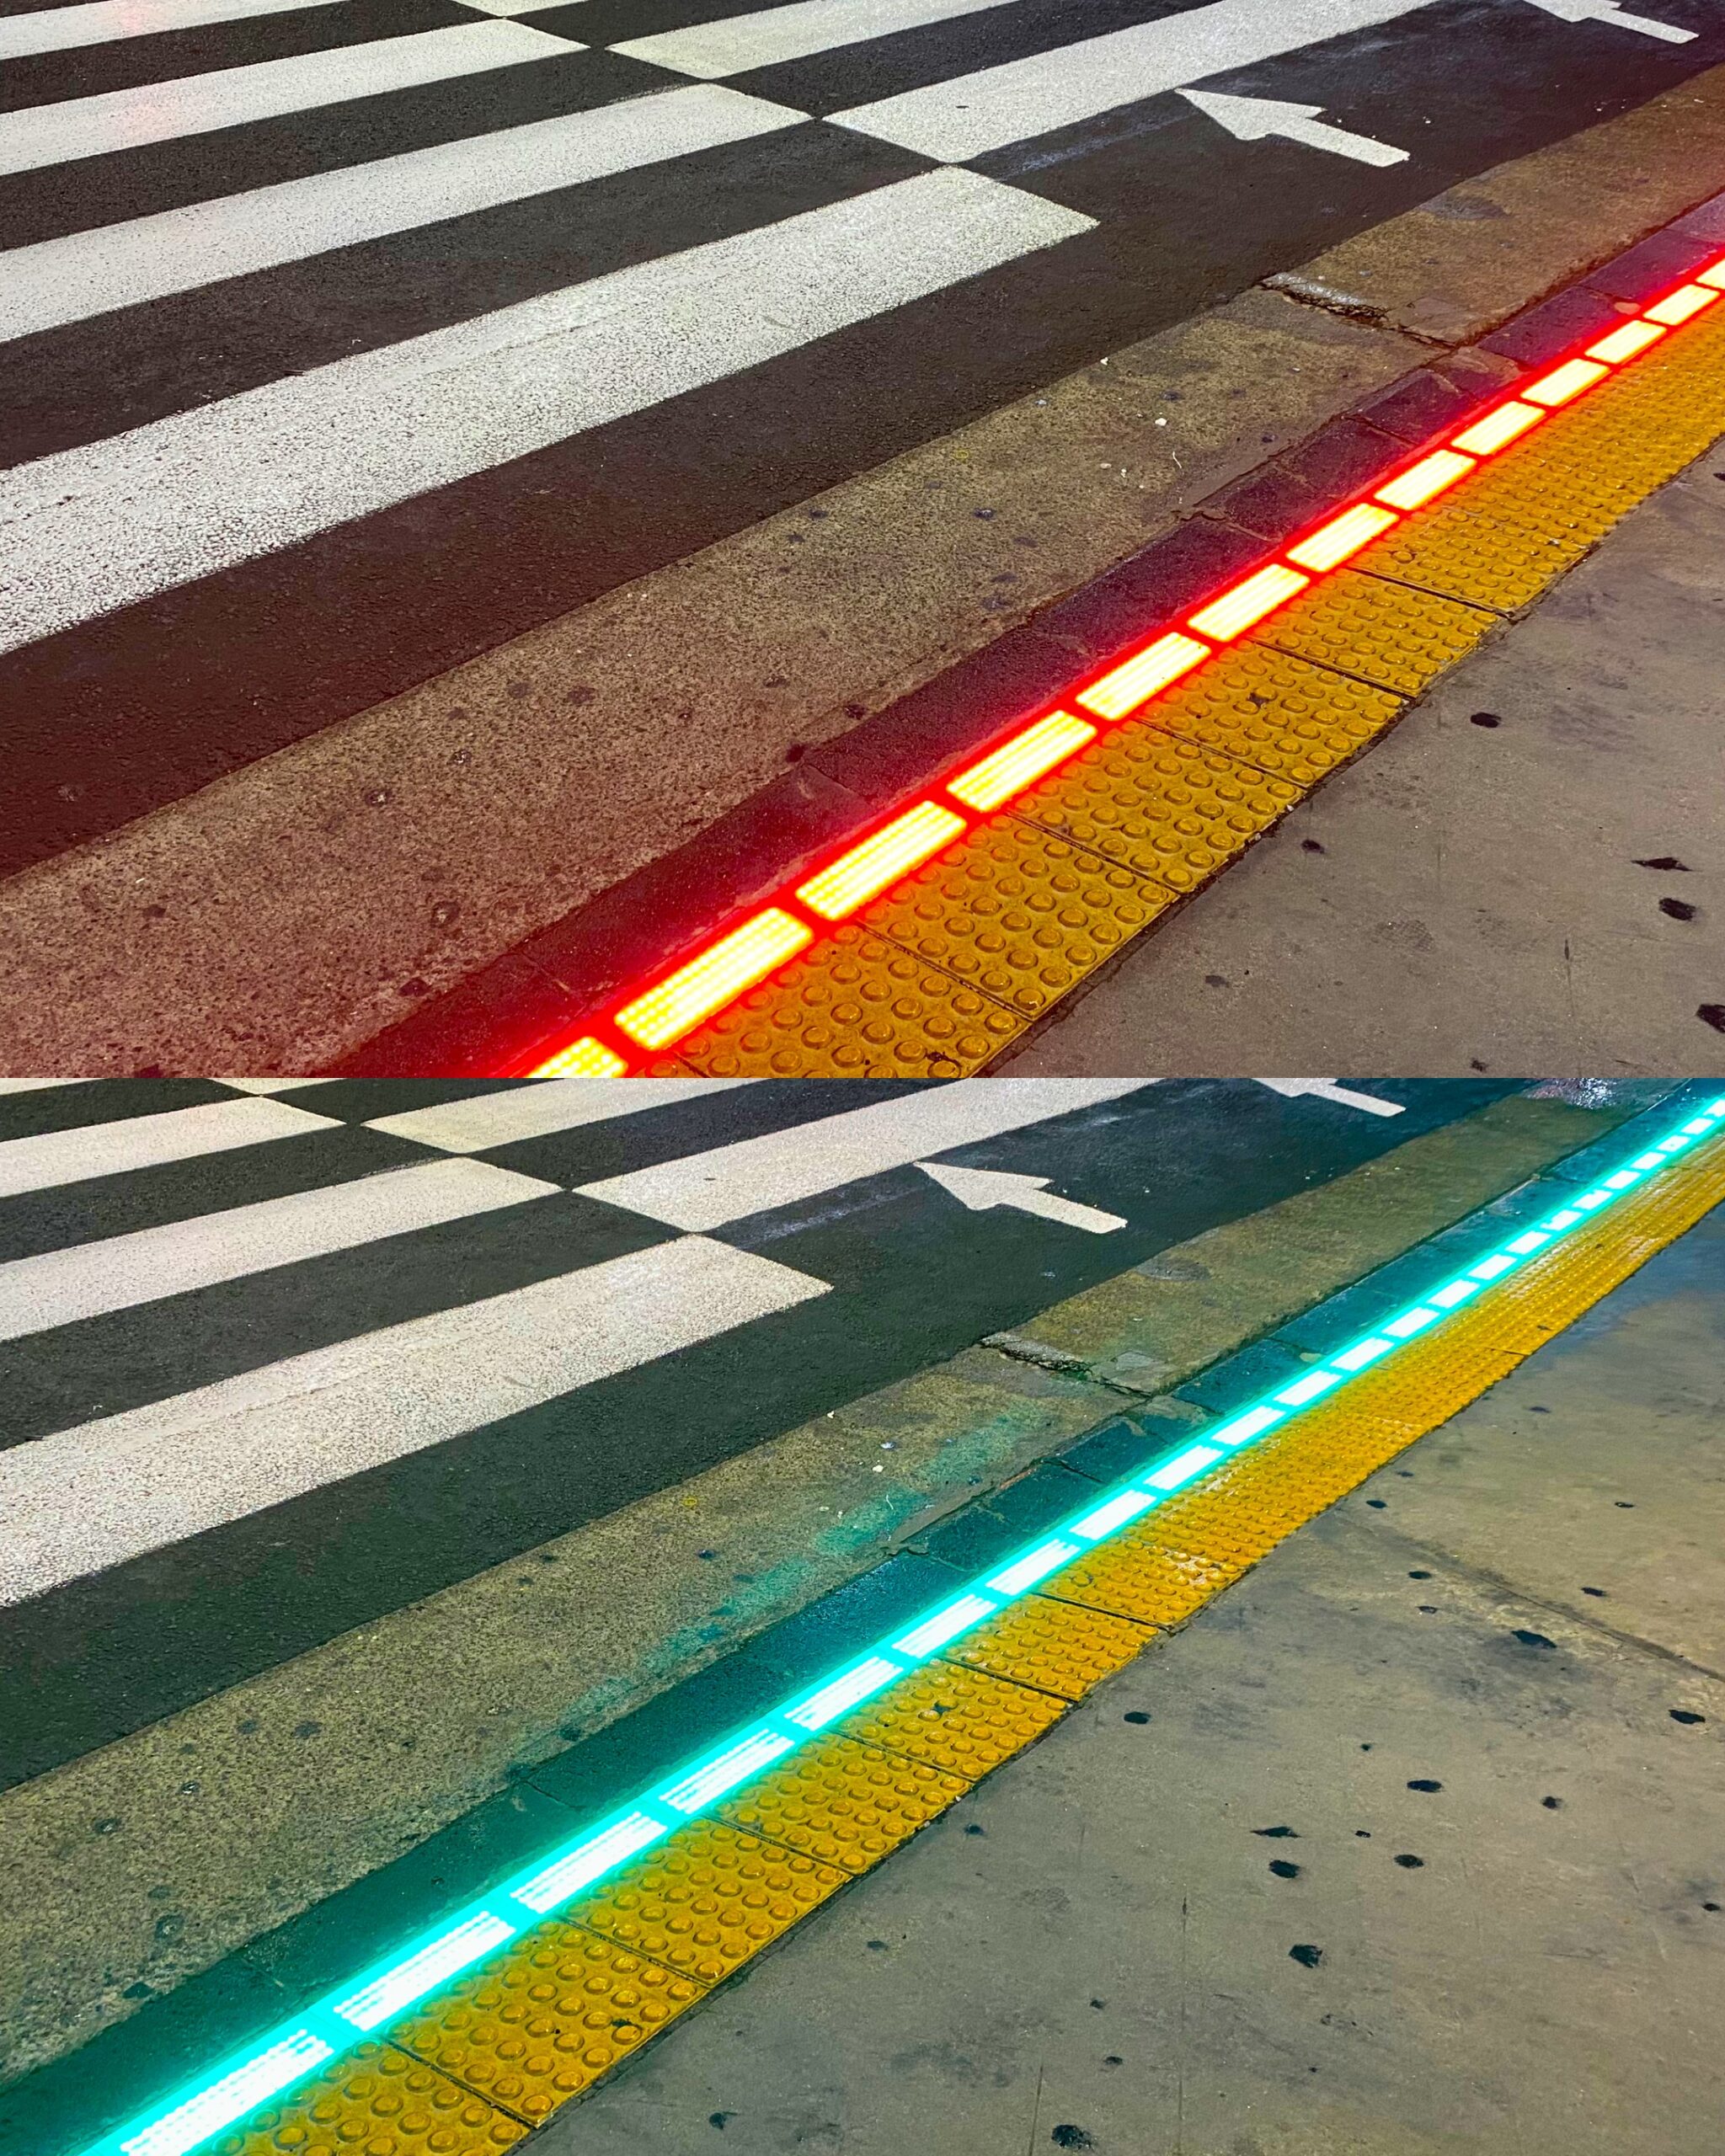 Taśmy LED zamontowane na skraju chodnika informują przechodniów zagapionych w telefon o możliwości przejścia przez ulicę.